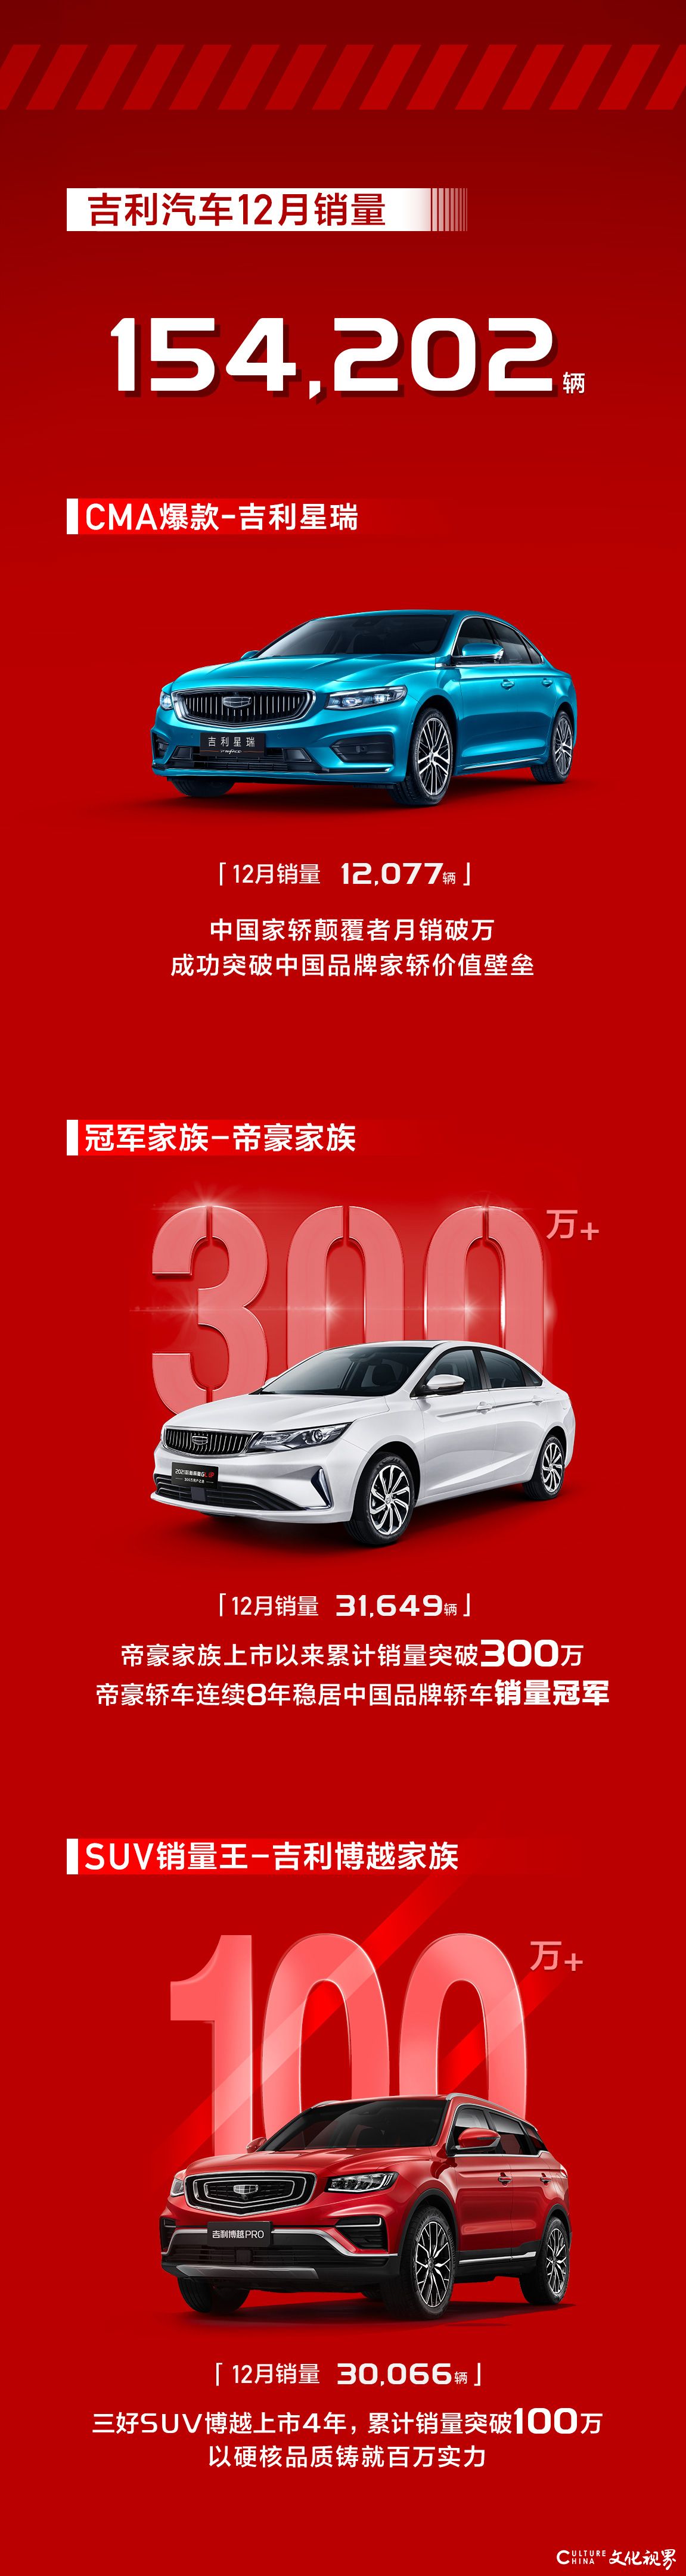 吉利汽车2020年销量超132万辆，连续4年蝉联“中国销冠”